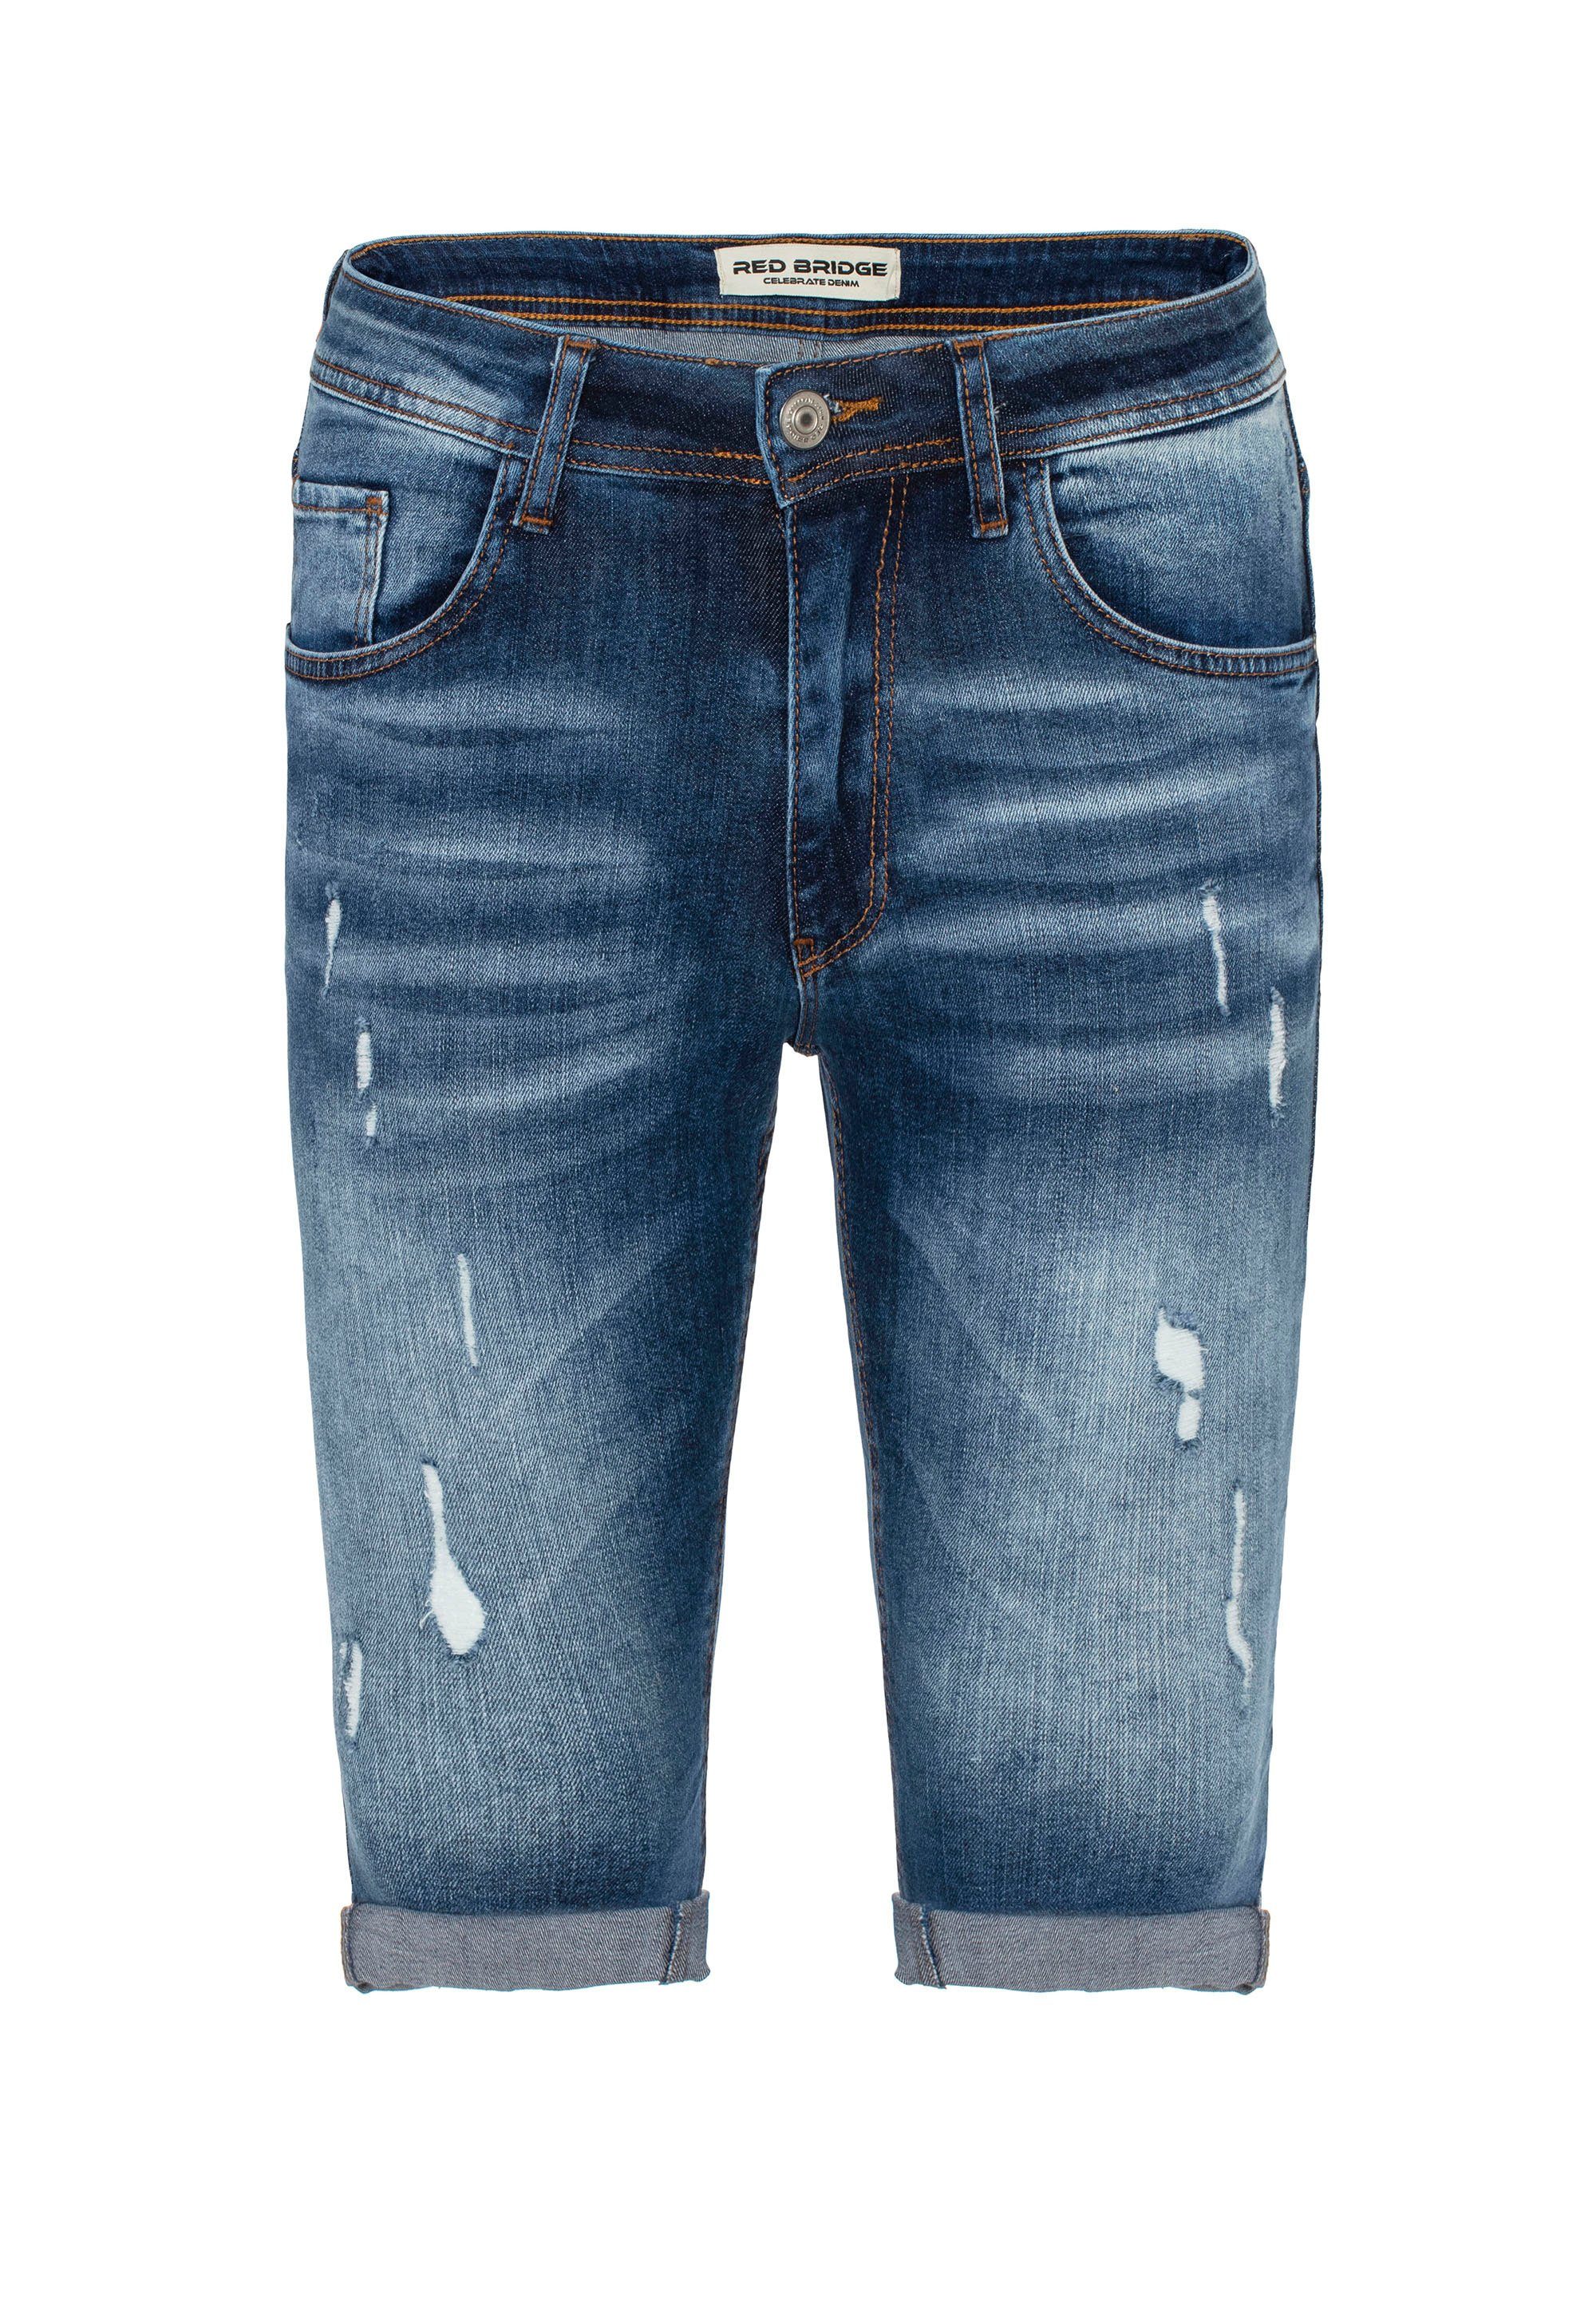 Shorts trendigen Destroyed-Elementen blau mit RedBridge